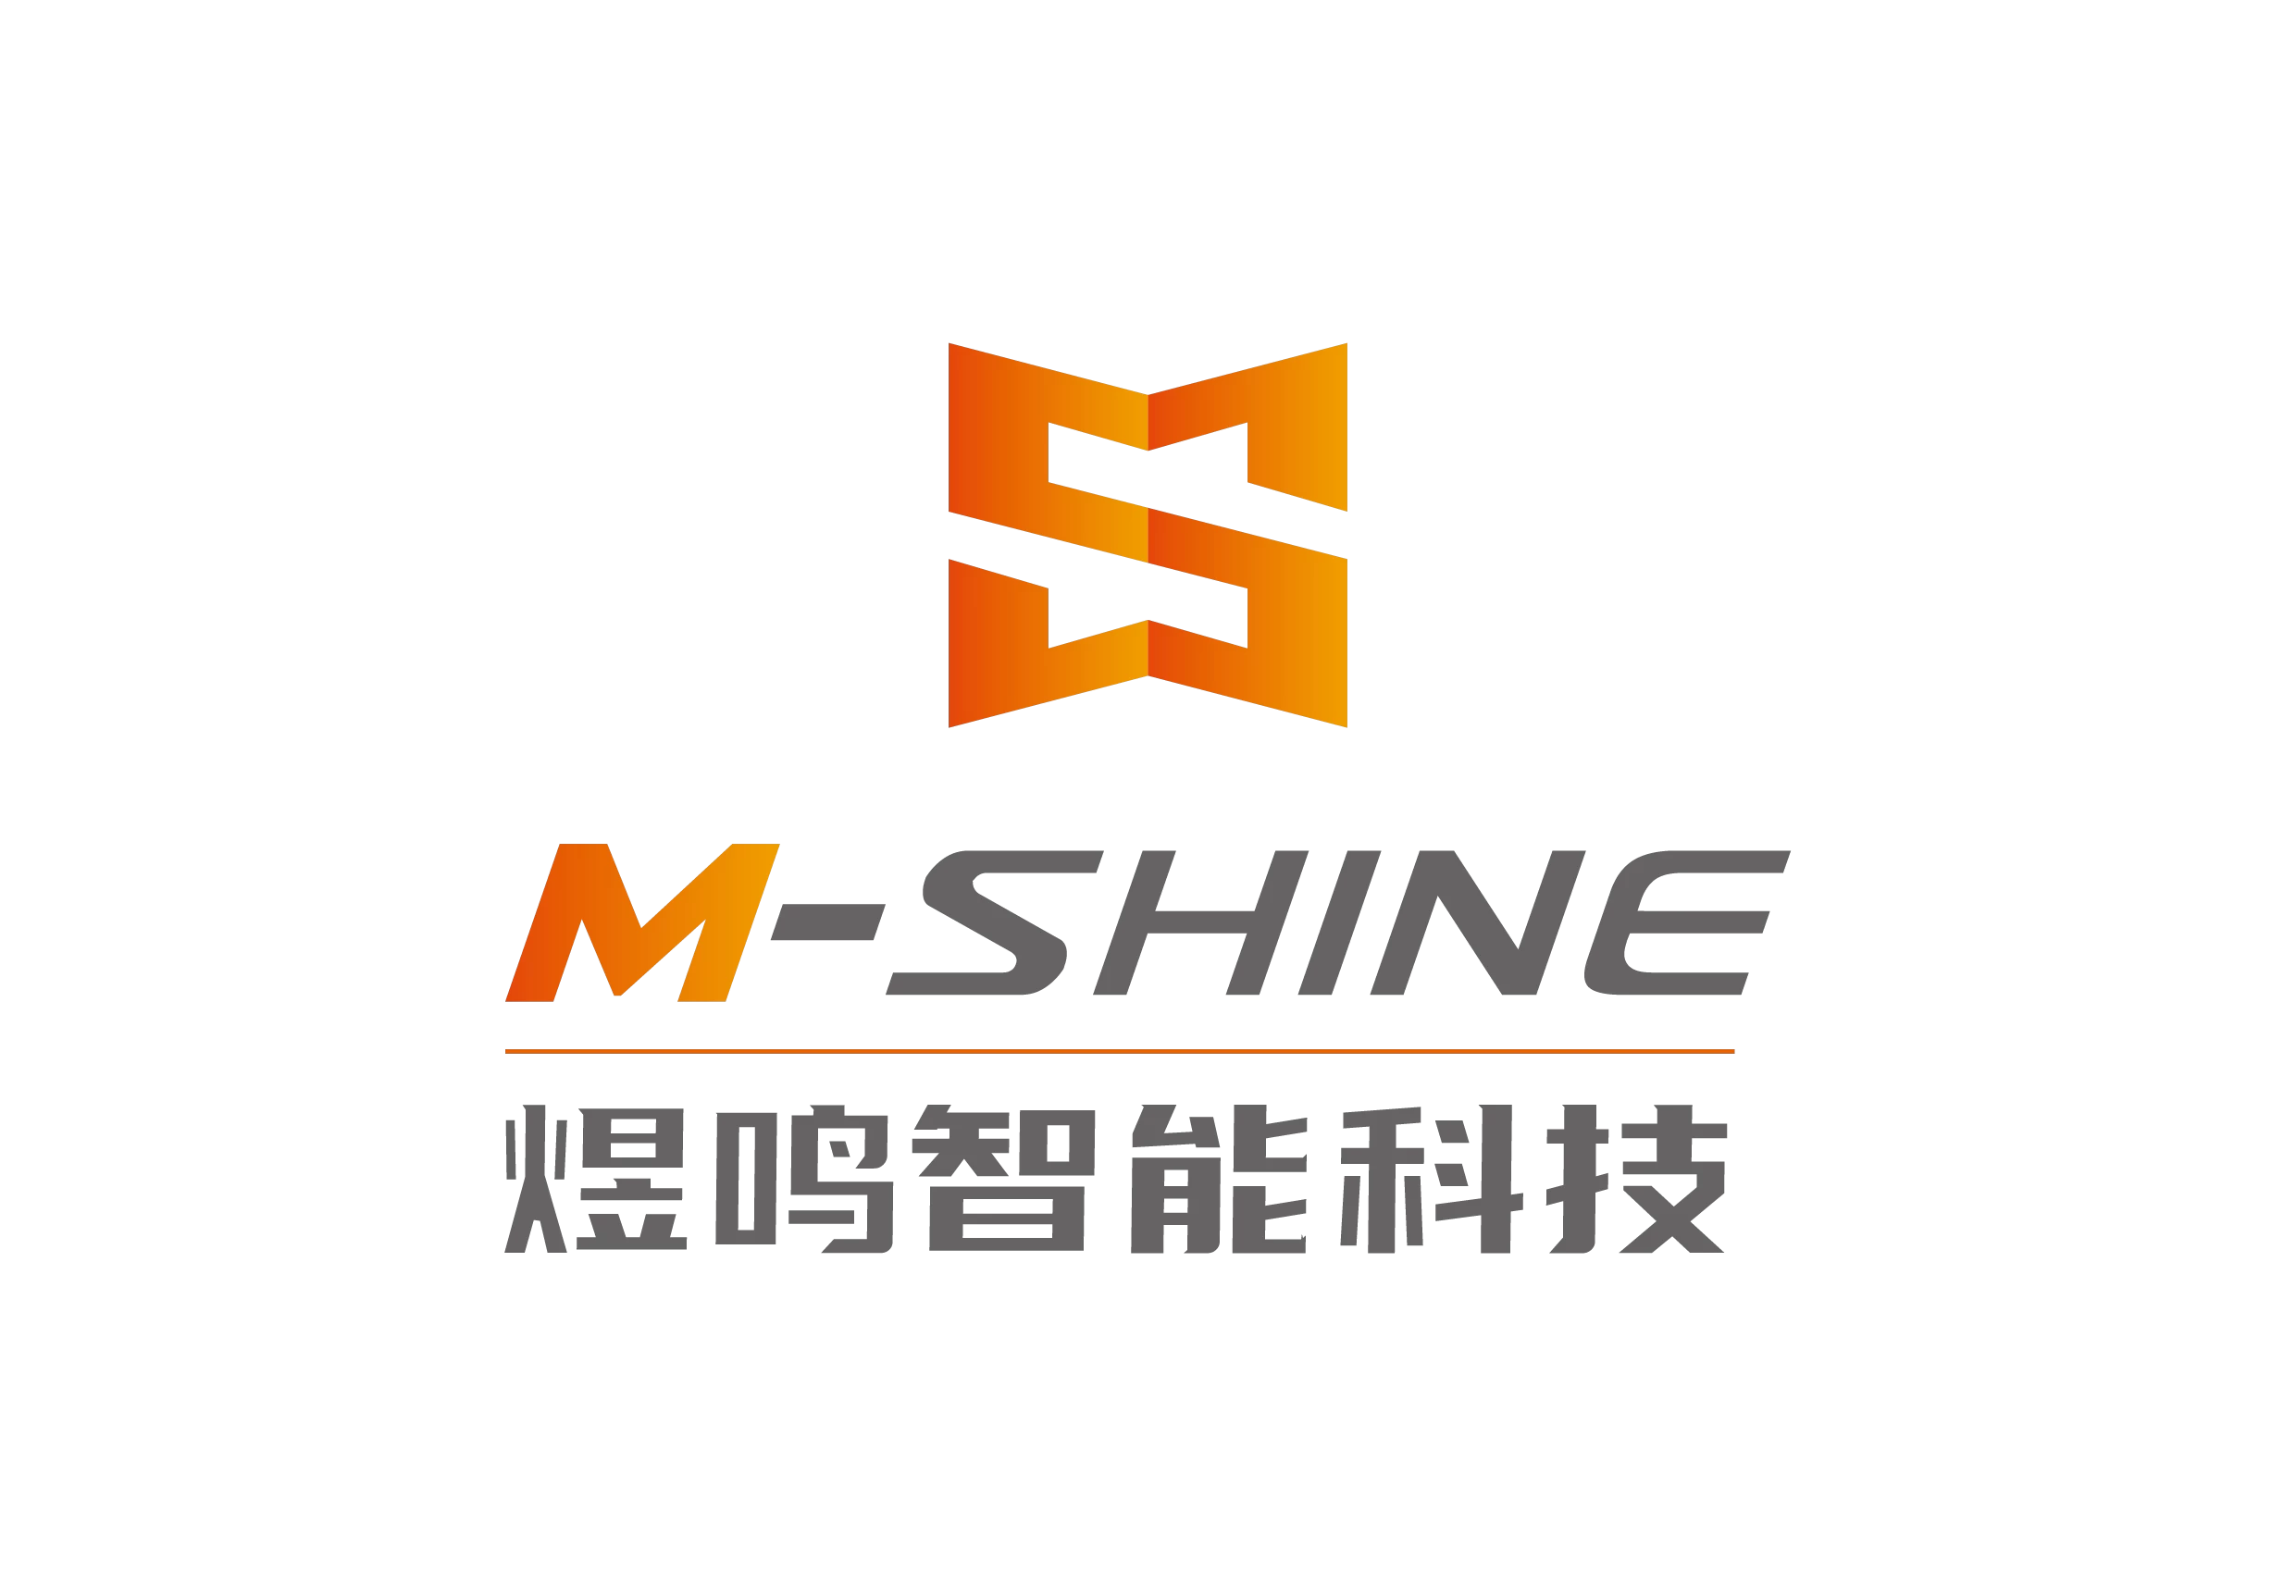 Zinan M - Shine Technology Ltd.